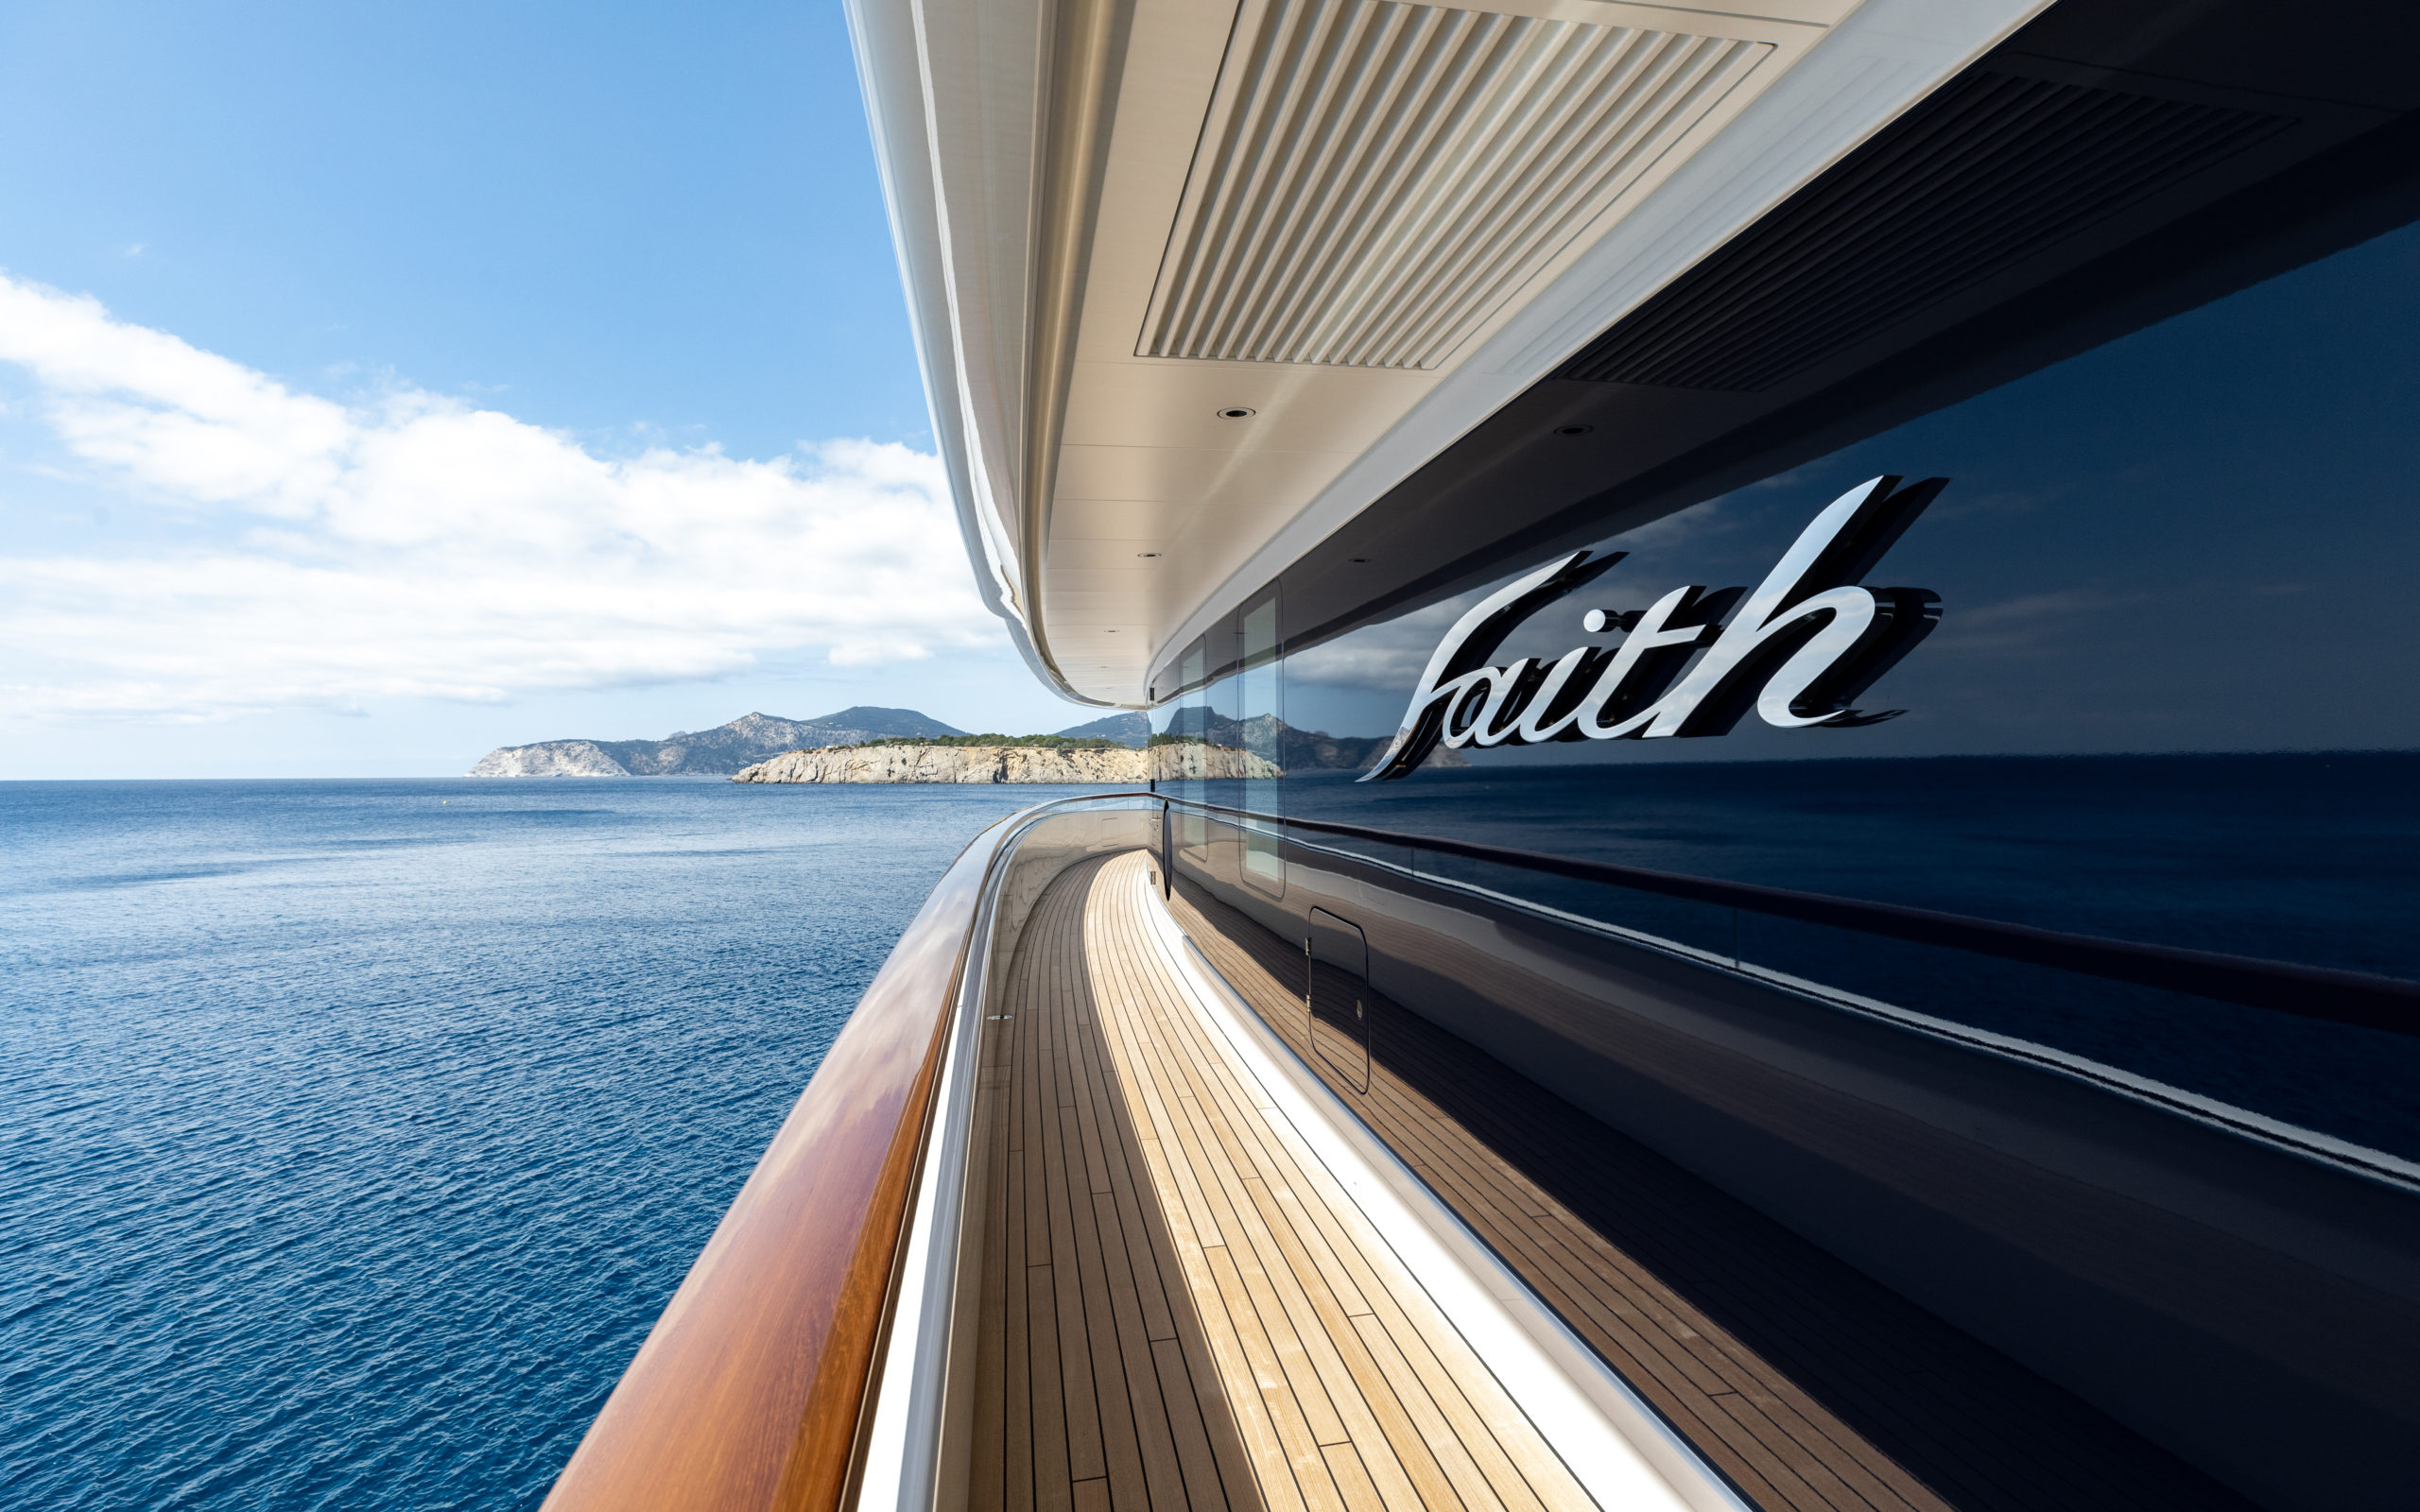 Lawrence Stroll Superyacht Faith